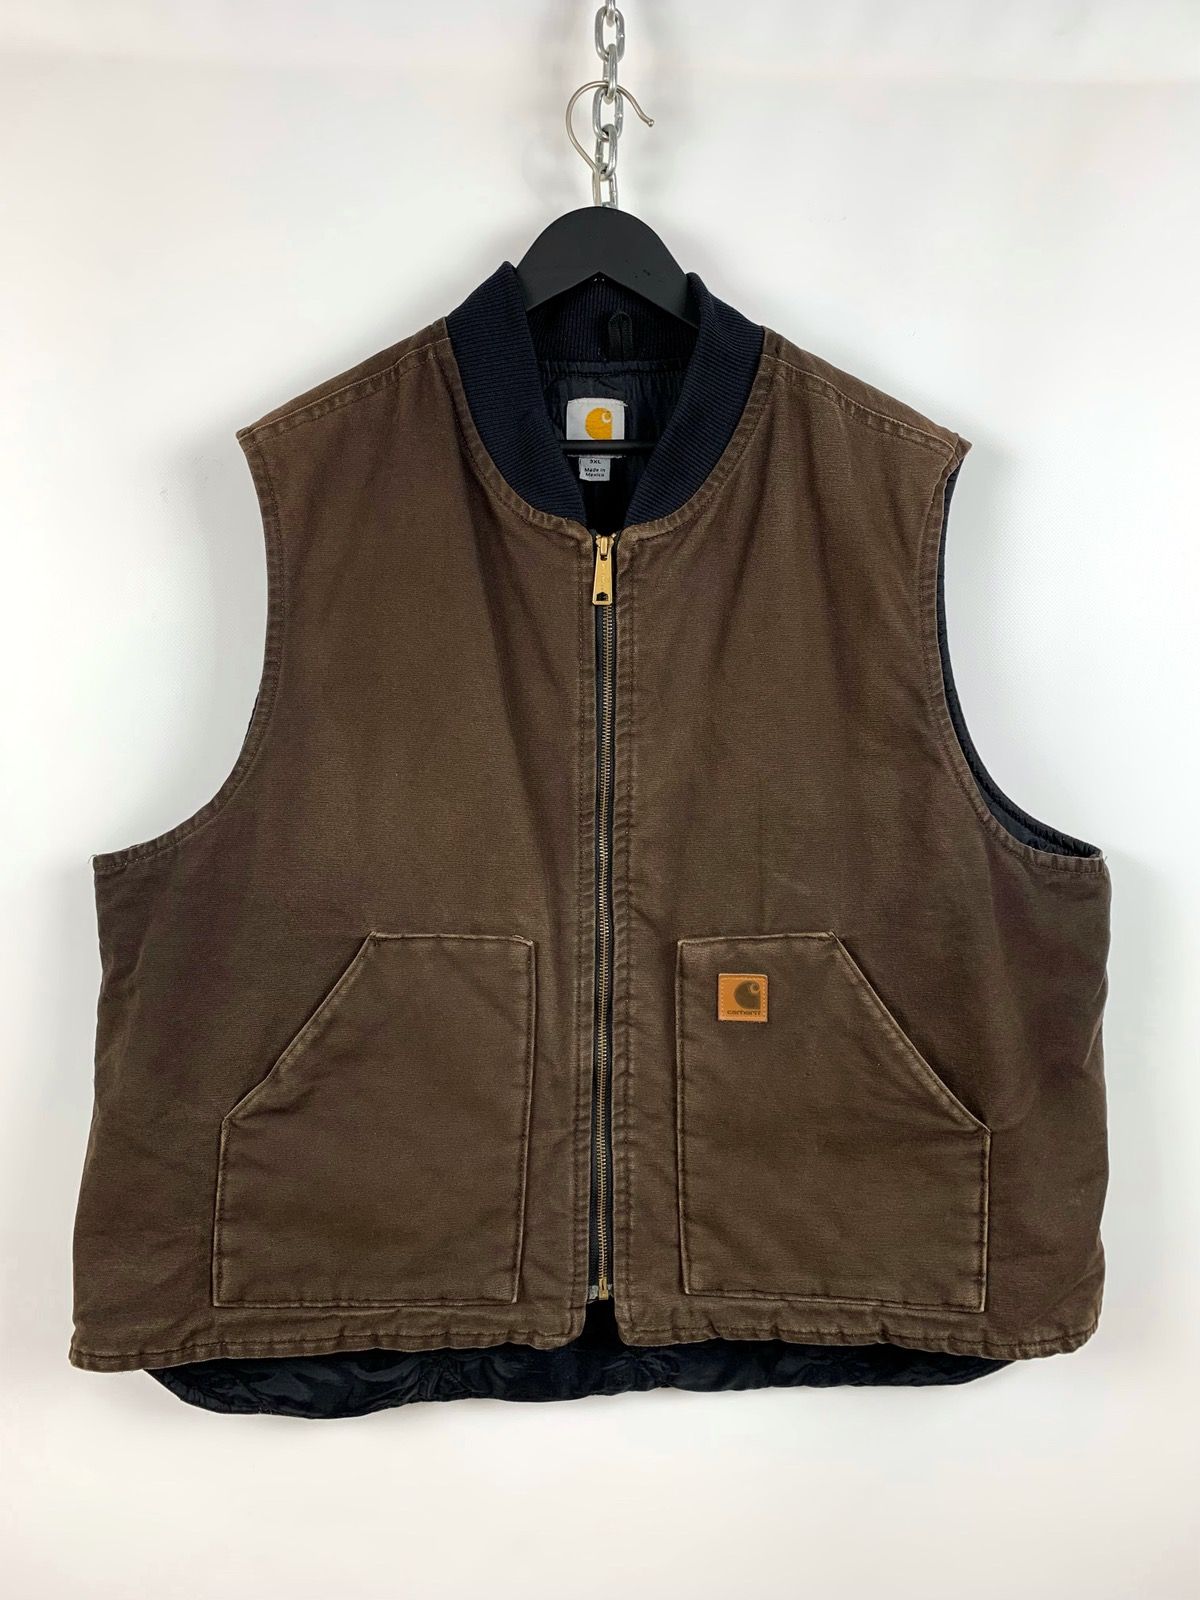 Pre-owned Carhartt X Vintage 90's Vintage Carhartt Brown Work Vest Jacket